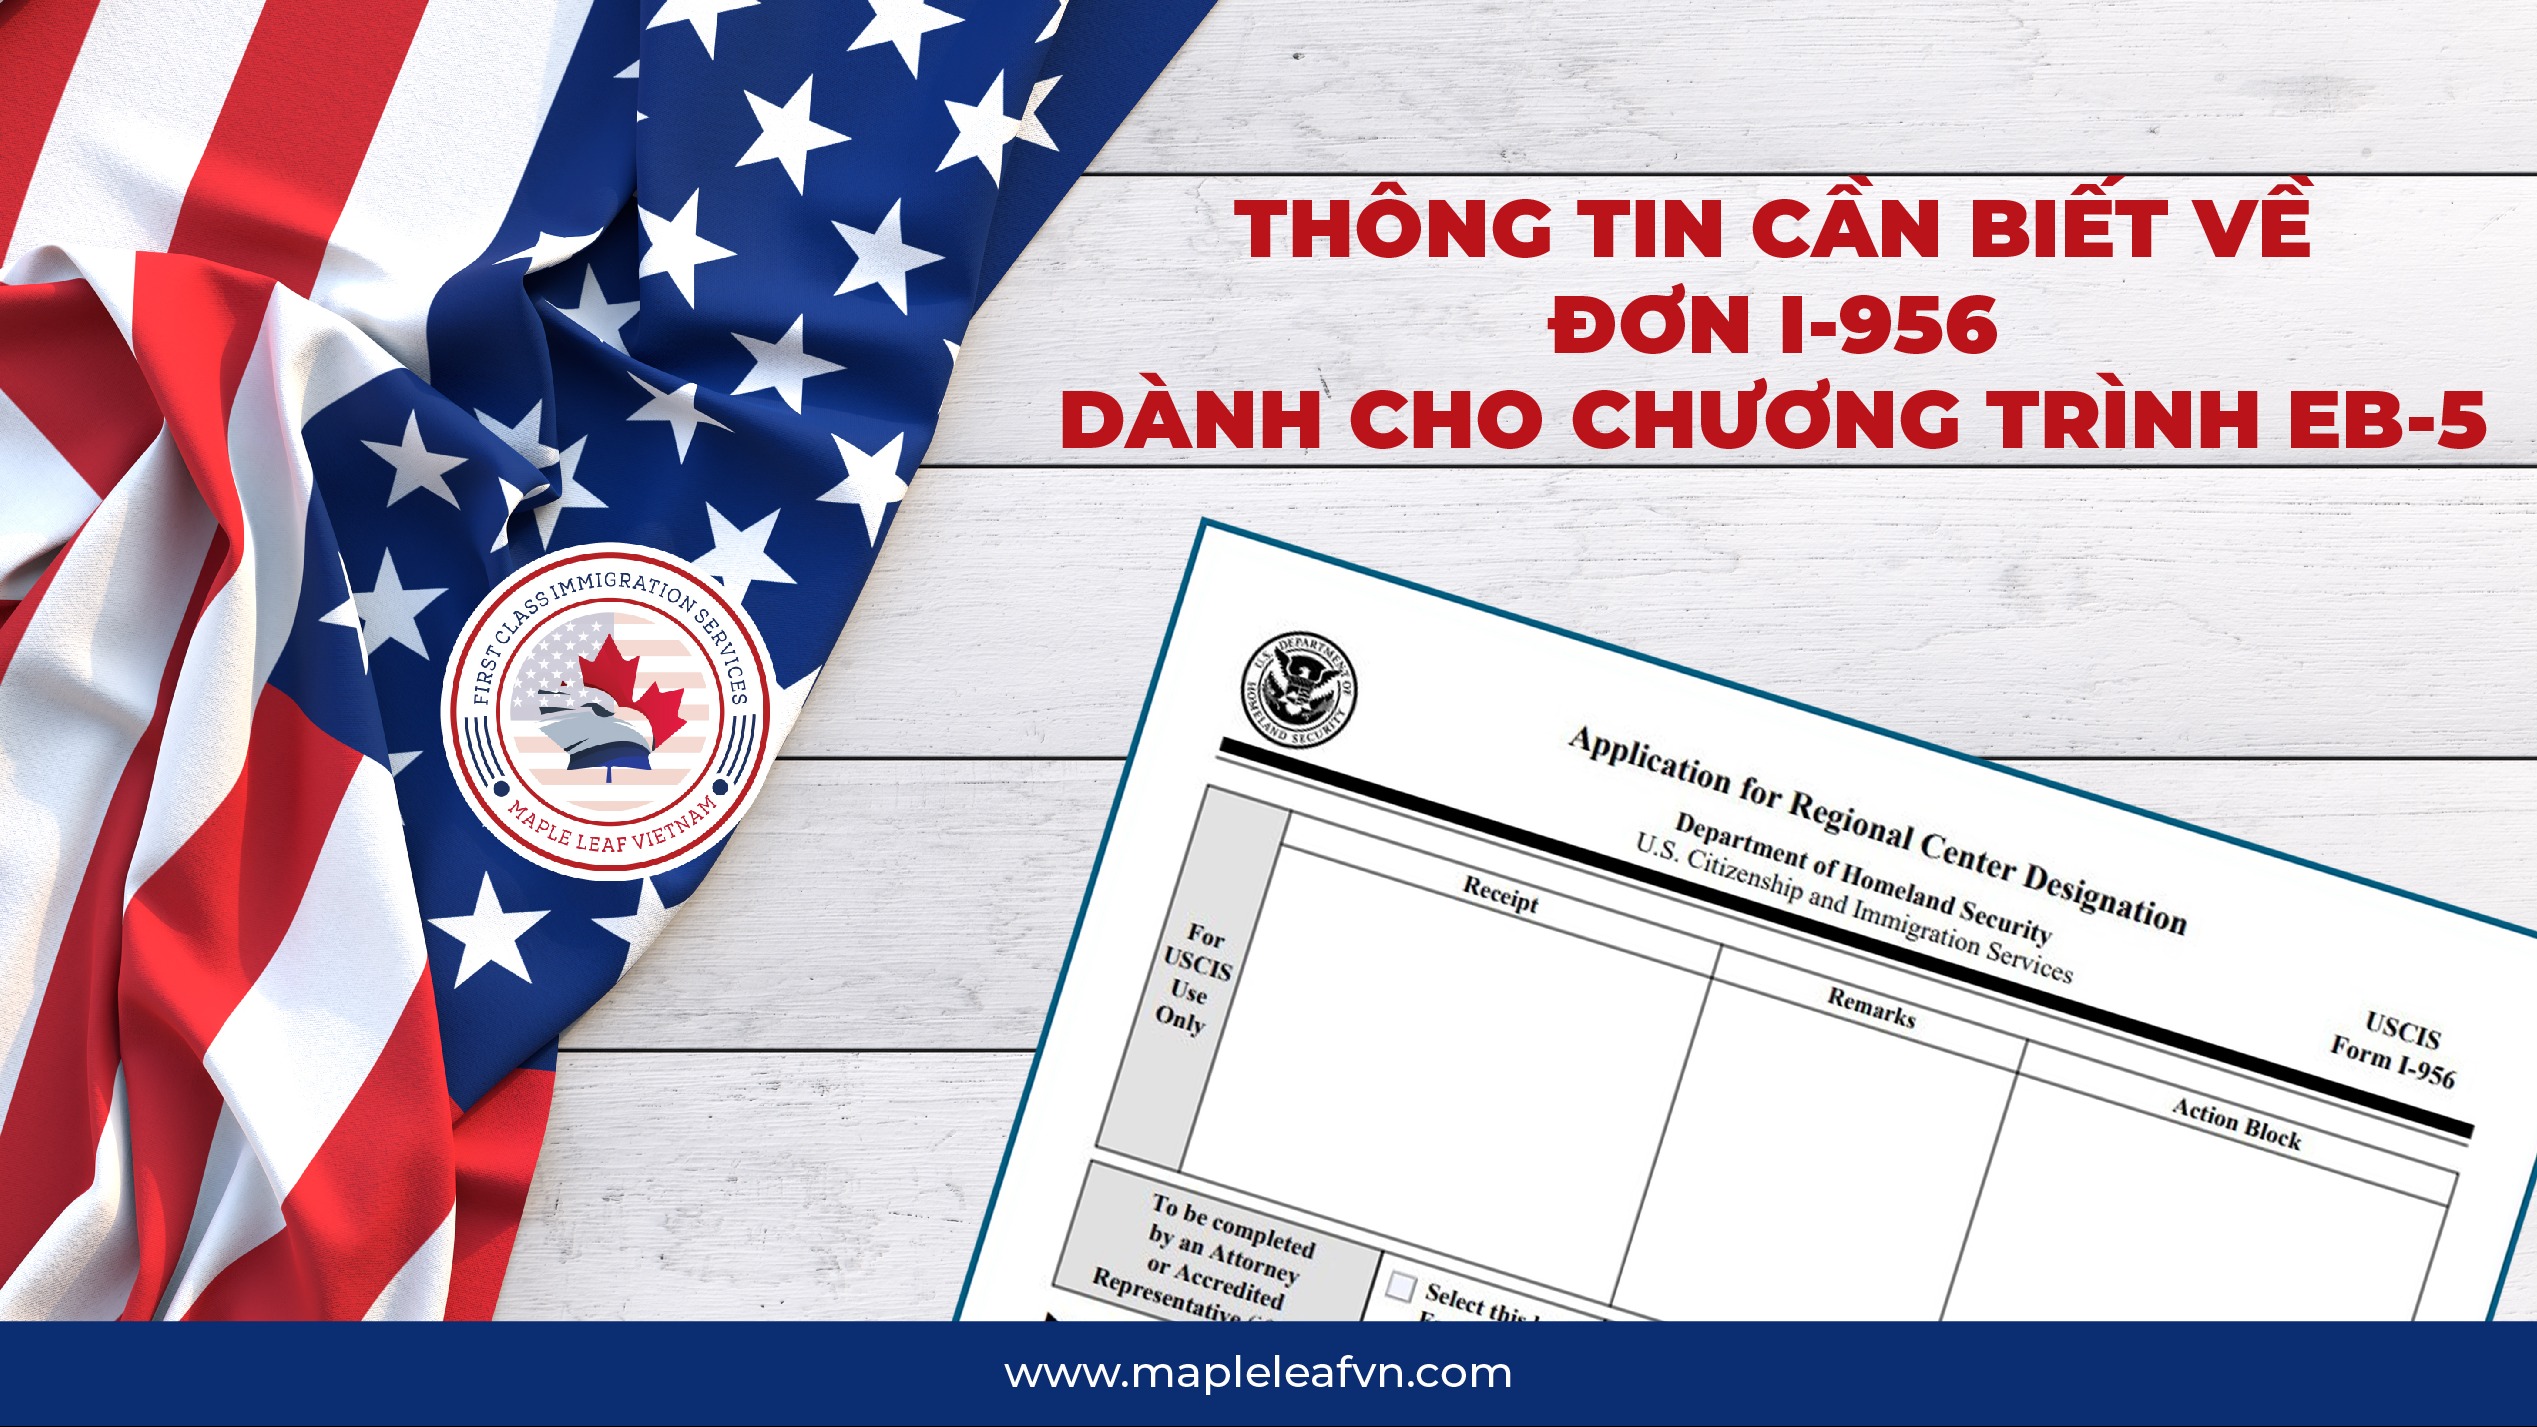 thong-tin-can-biet-ve-don-i-956-danh-cho-chuong-trinh-eb-5